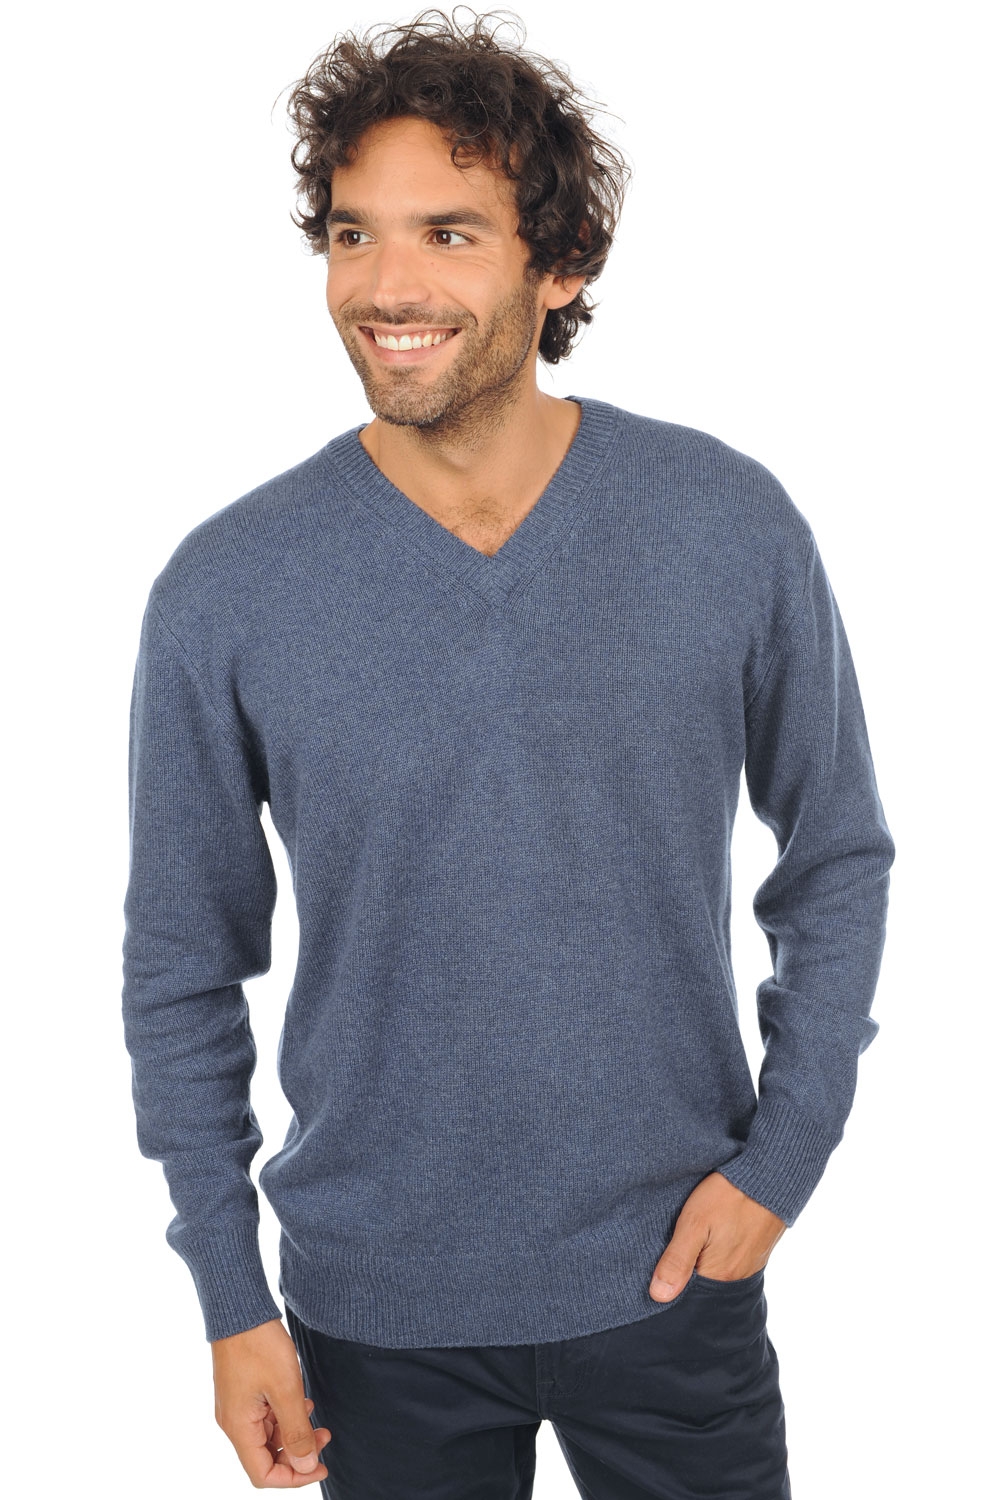 Cashmere men premium sweaters hippolyte 4f premium premium rockpool xl